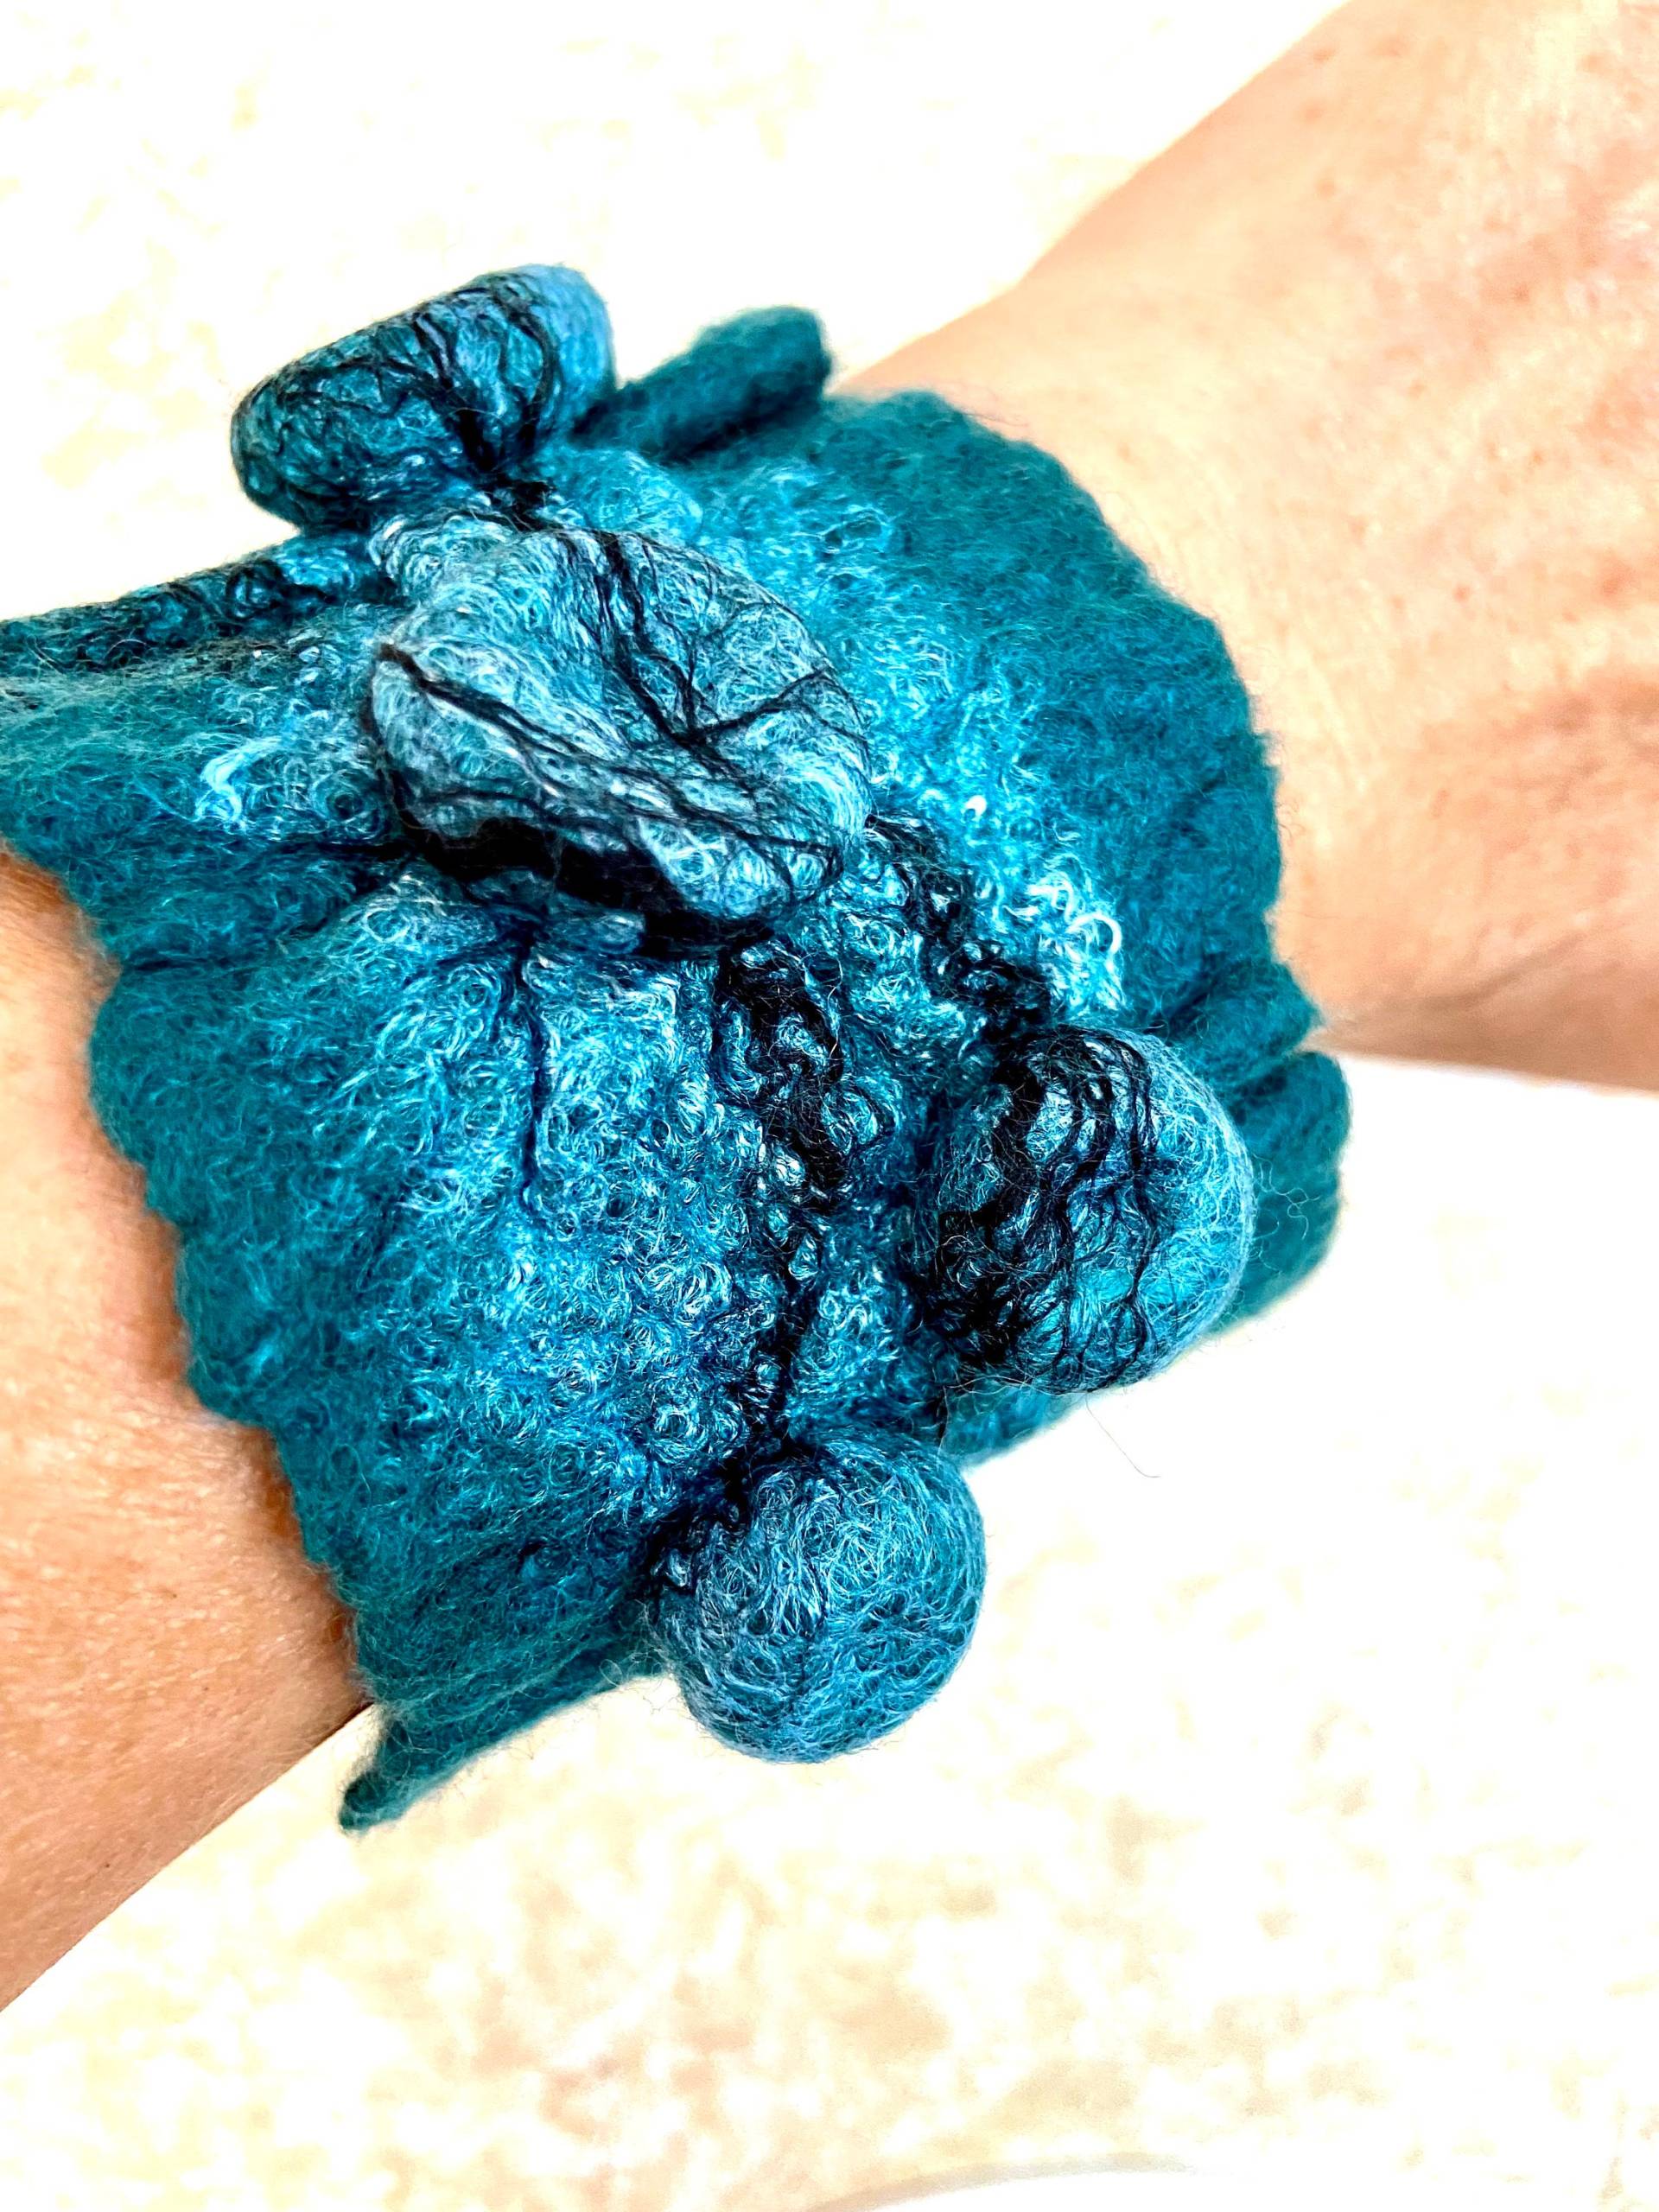 Gefilztes Armband, Wolle Manschette/Armband, Handgemachtes Shibori Kunst Textur, Schmuck, Boho Stil Armband von MiracleWoolArt